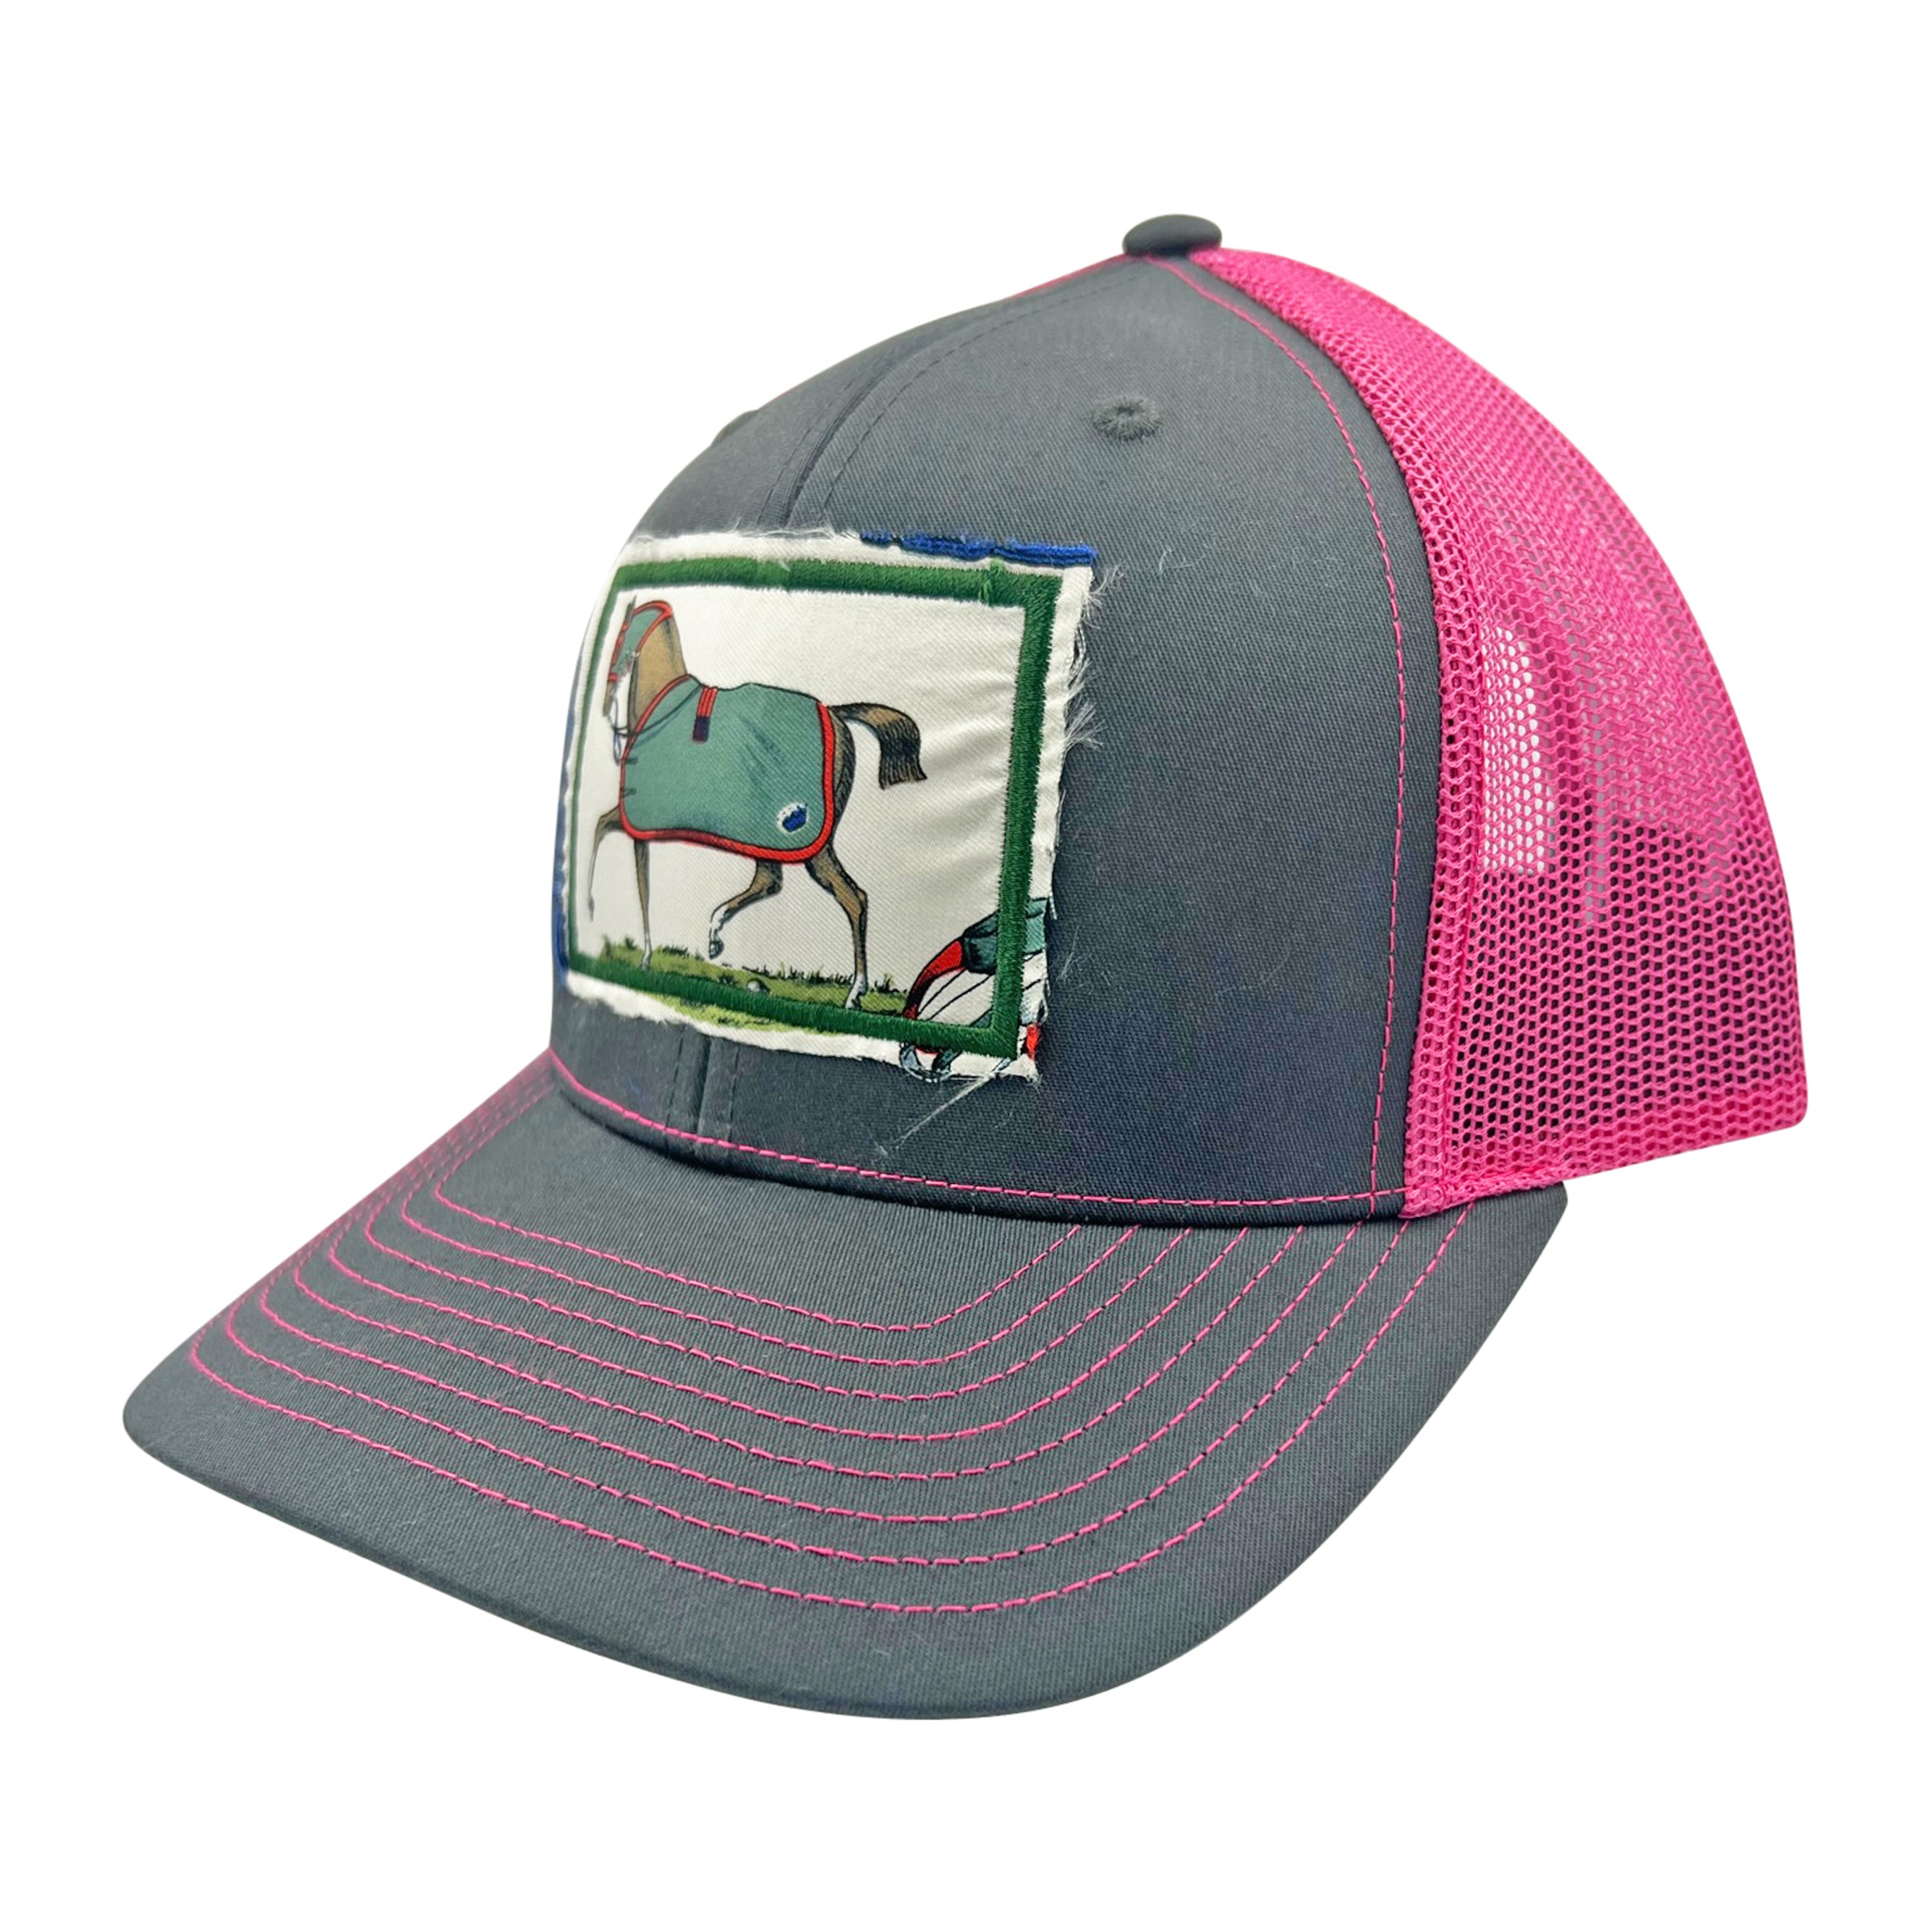 Ball Cap Equestrian - Grey / Pink